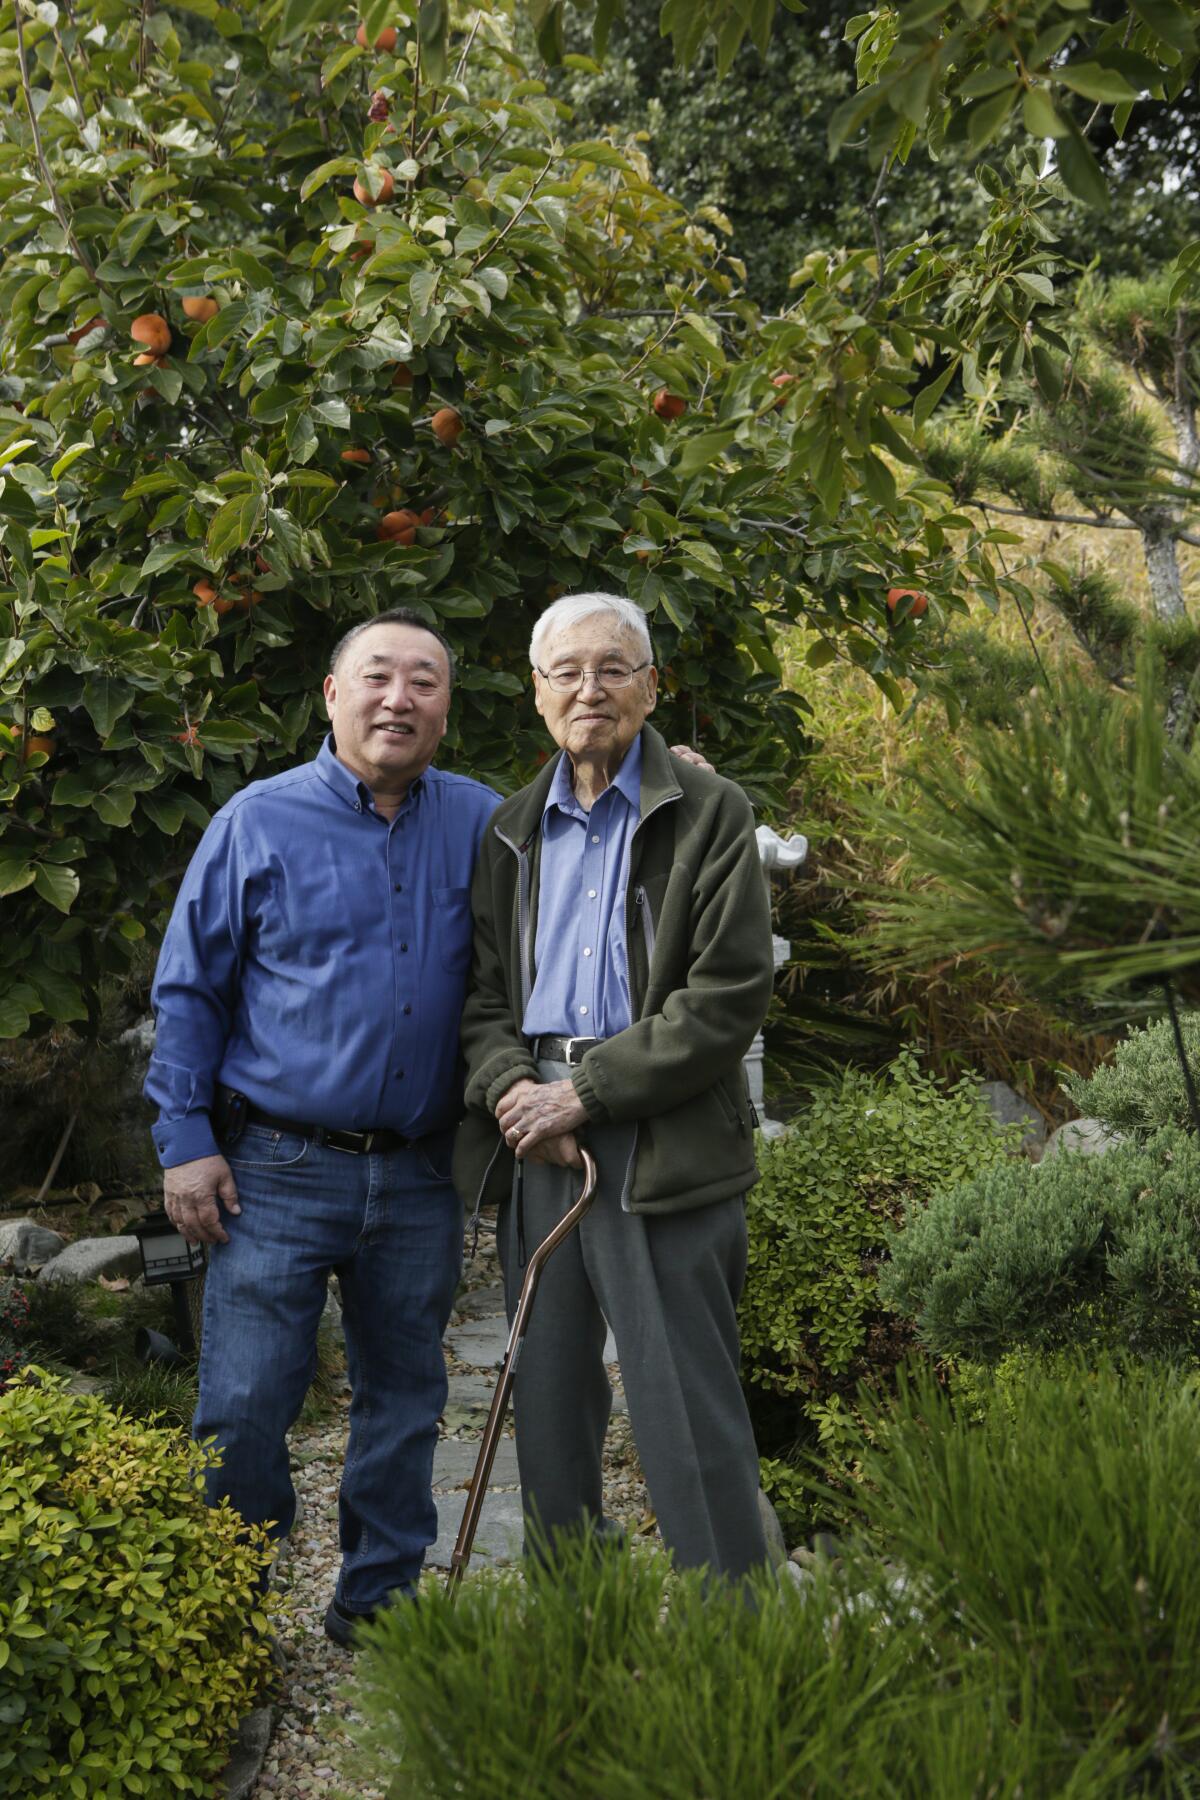 John Nishio, 71, left, and Shig Nishio, 98